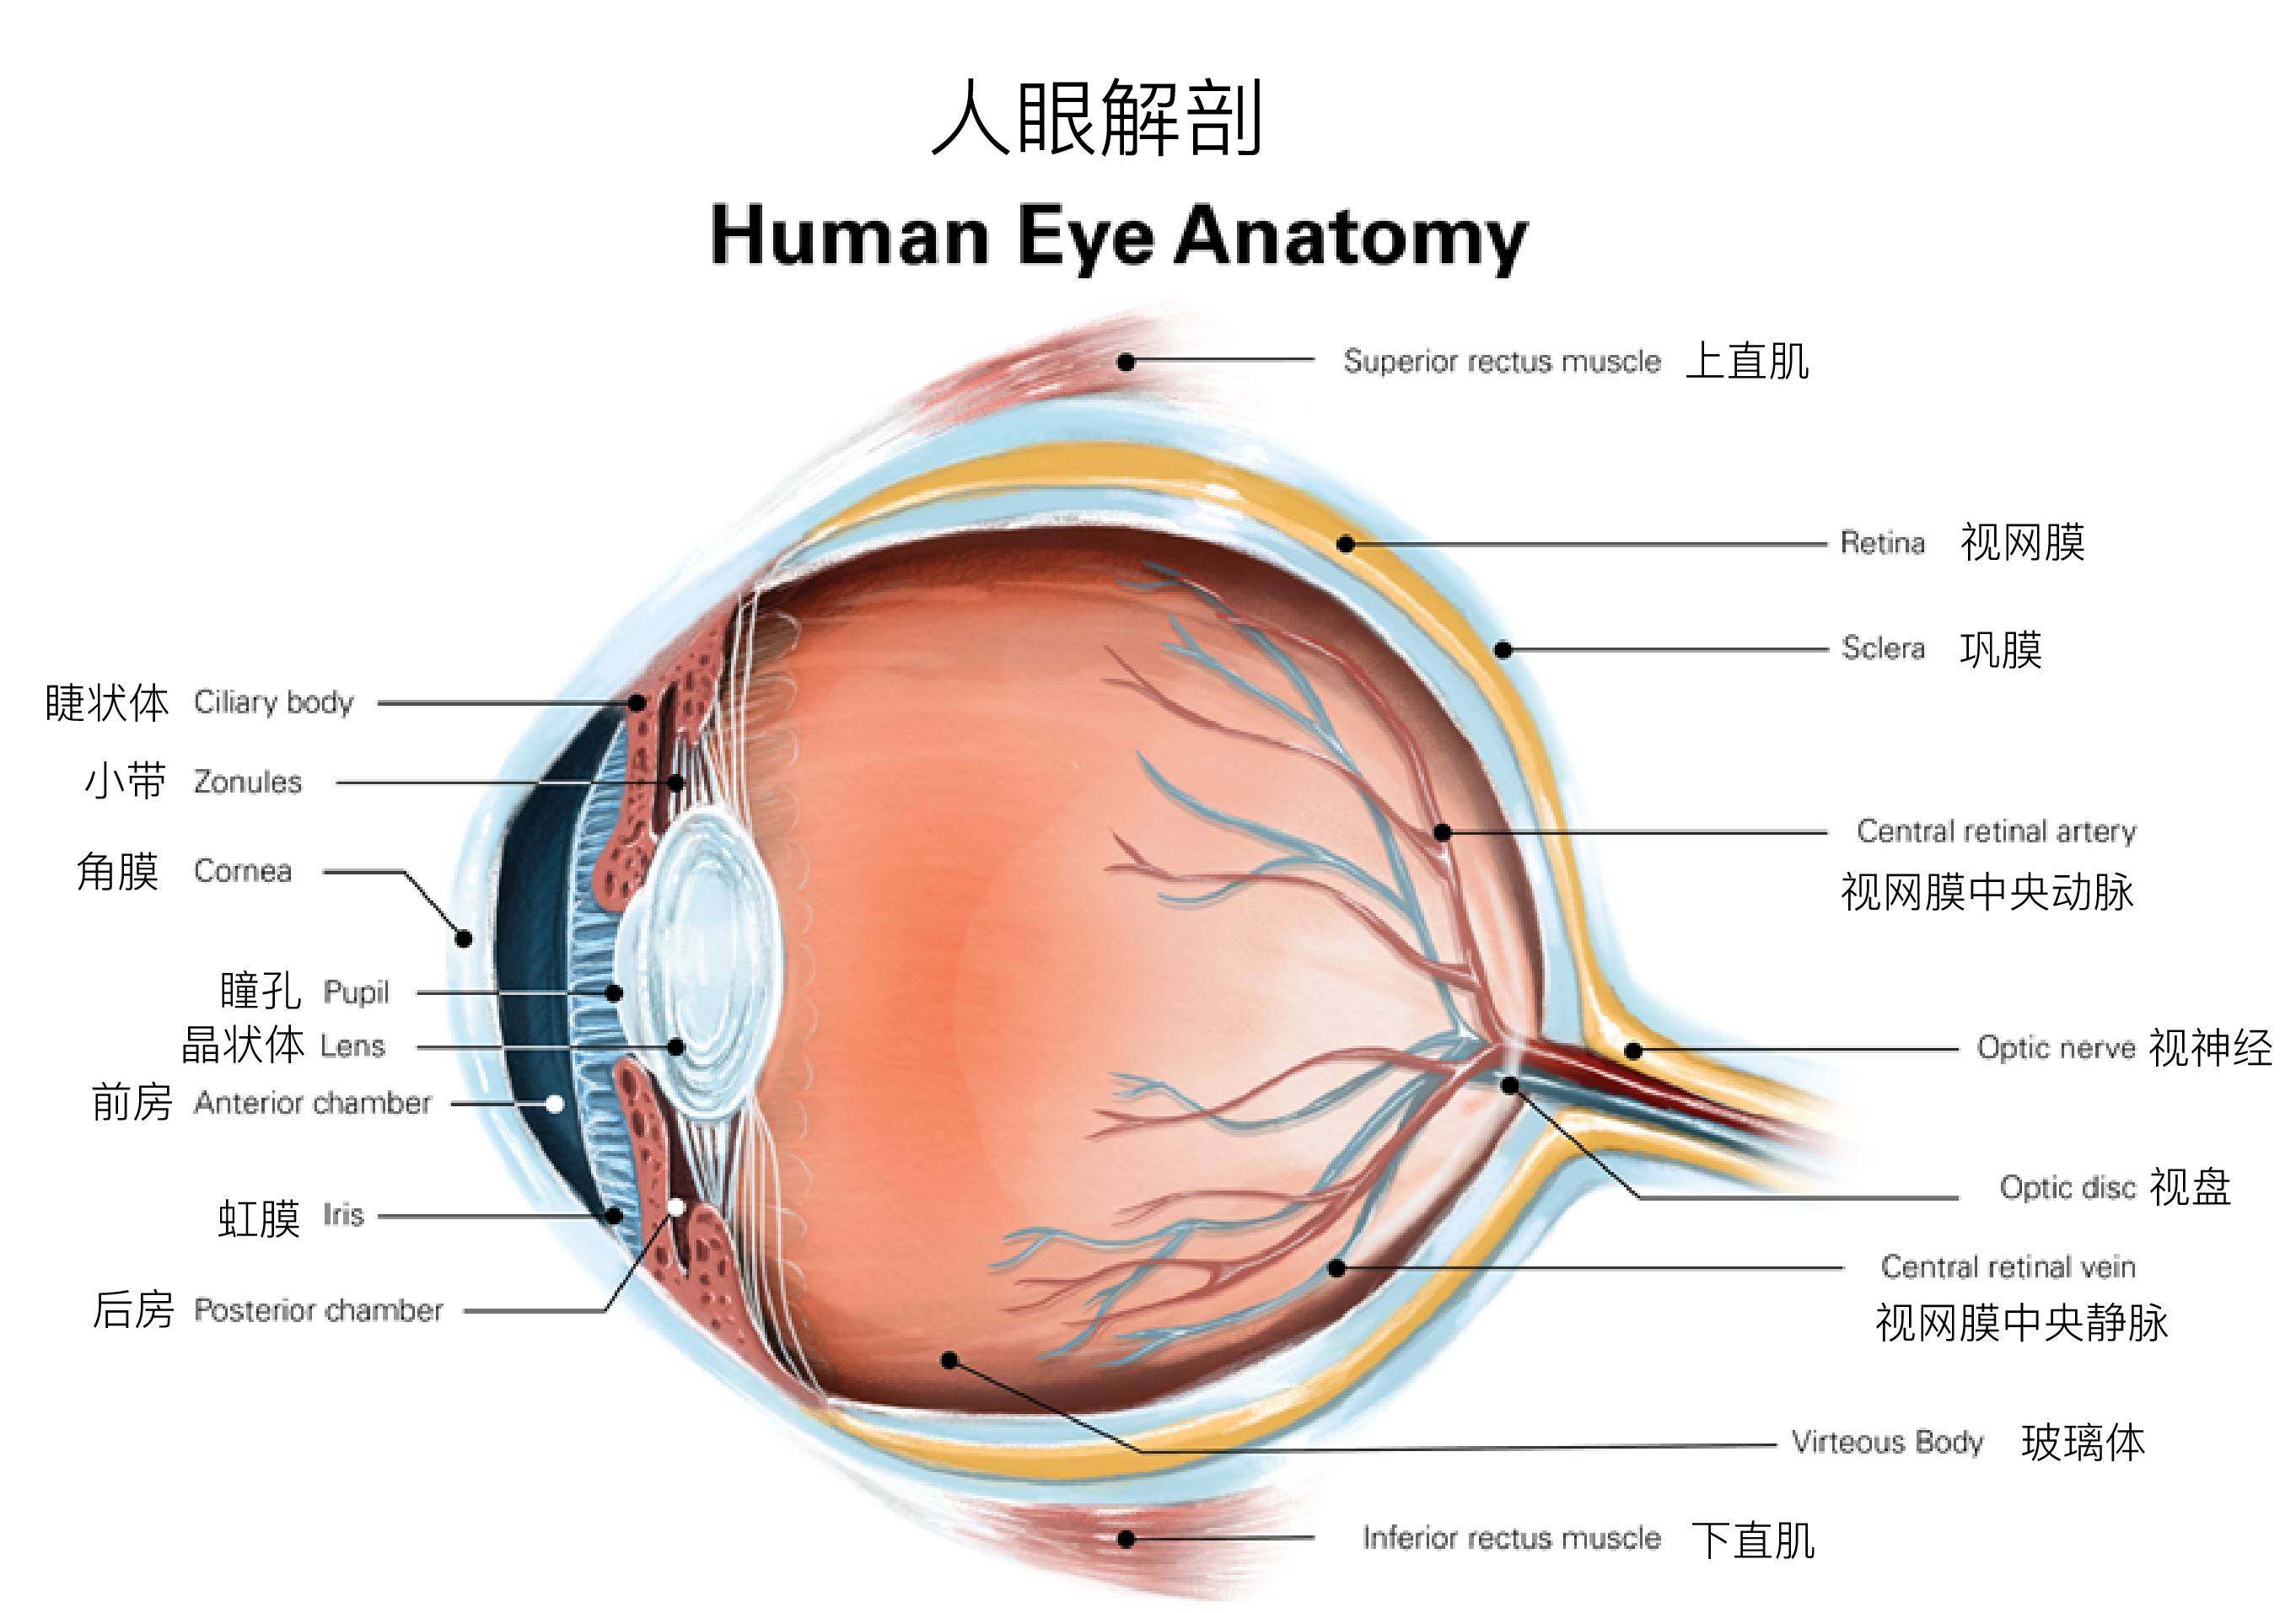 泪膜被吸附在球结膜,睑结膜和角膜上皮上,它润滑了整个眼球前表面